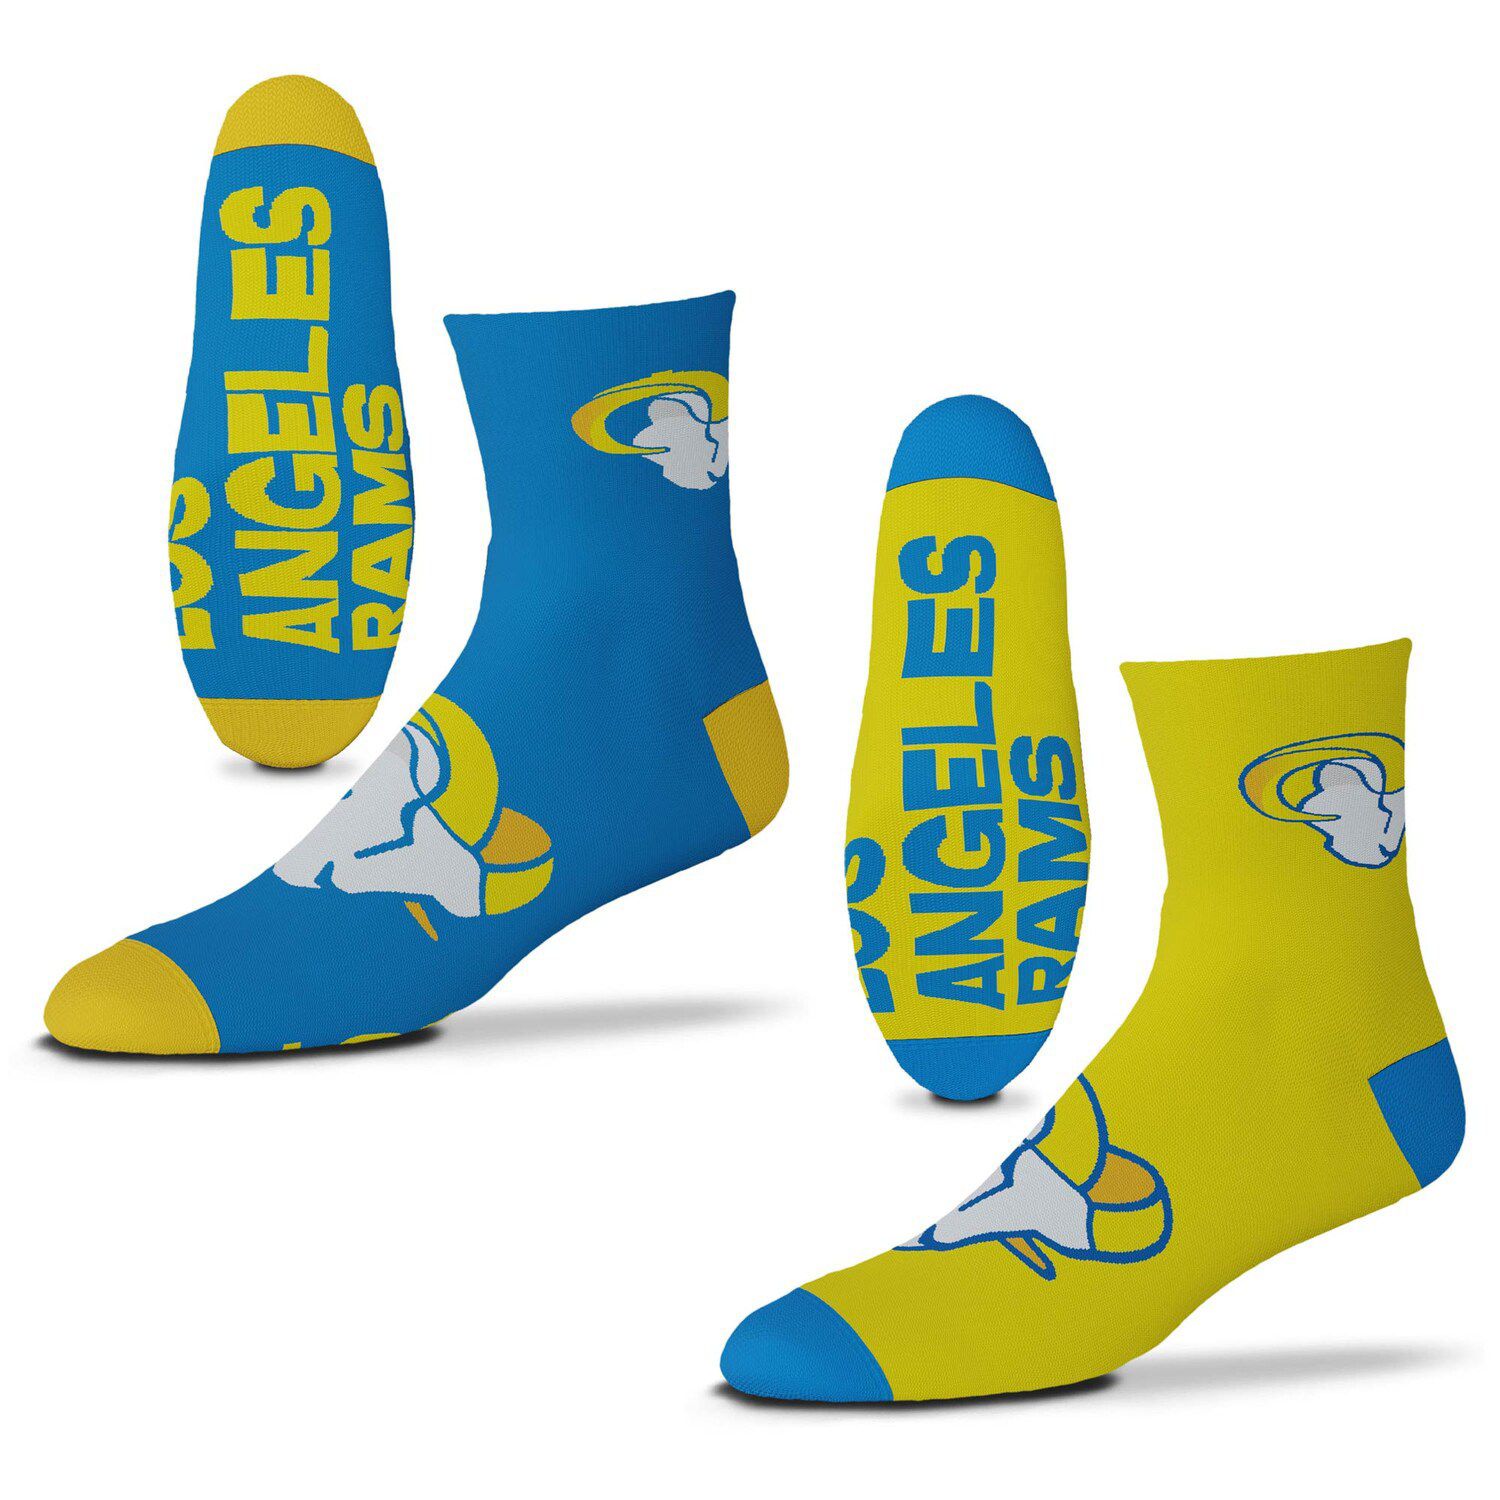 Image for Unbranded Men's For Bare Feet Los Angeles Rams 2-Pack Team Quarter-Length Socks at Kohl's.